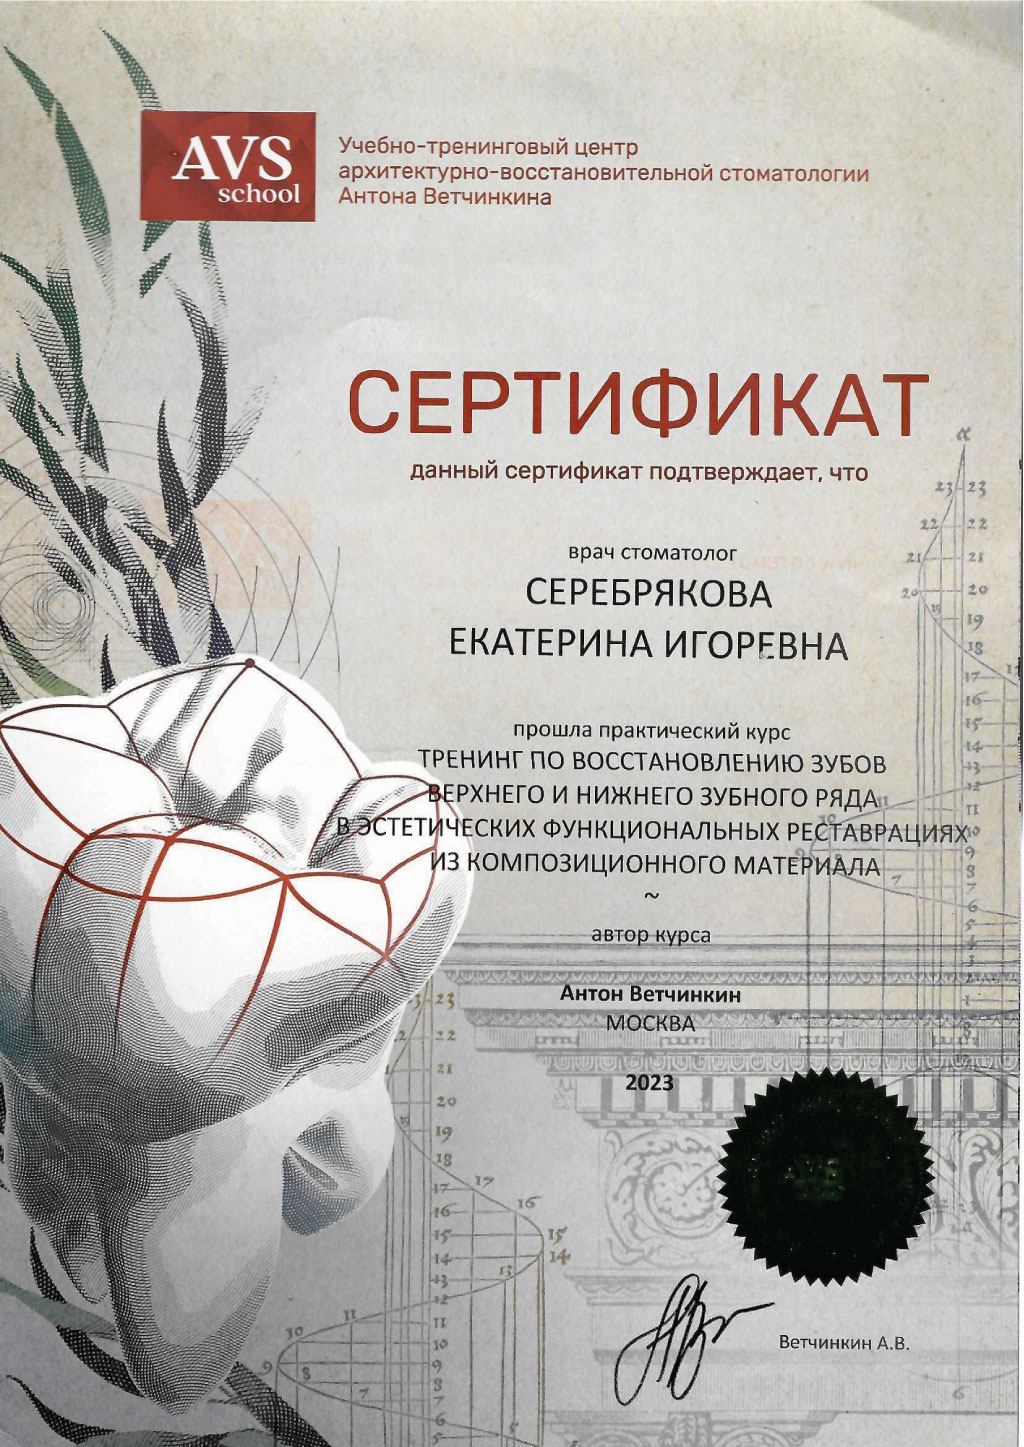 Сертификат стоматолога Серебряковой Екатерины: Тренинг по восстановлению зубов верхнего и нижнего зубоного ряда